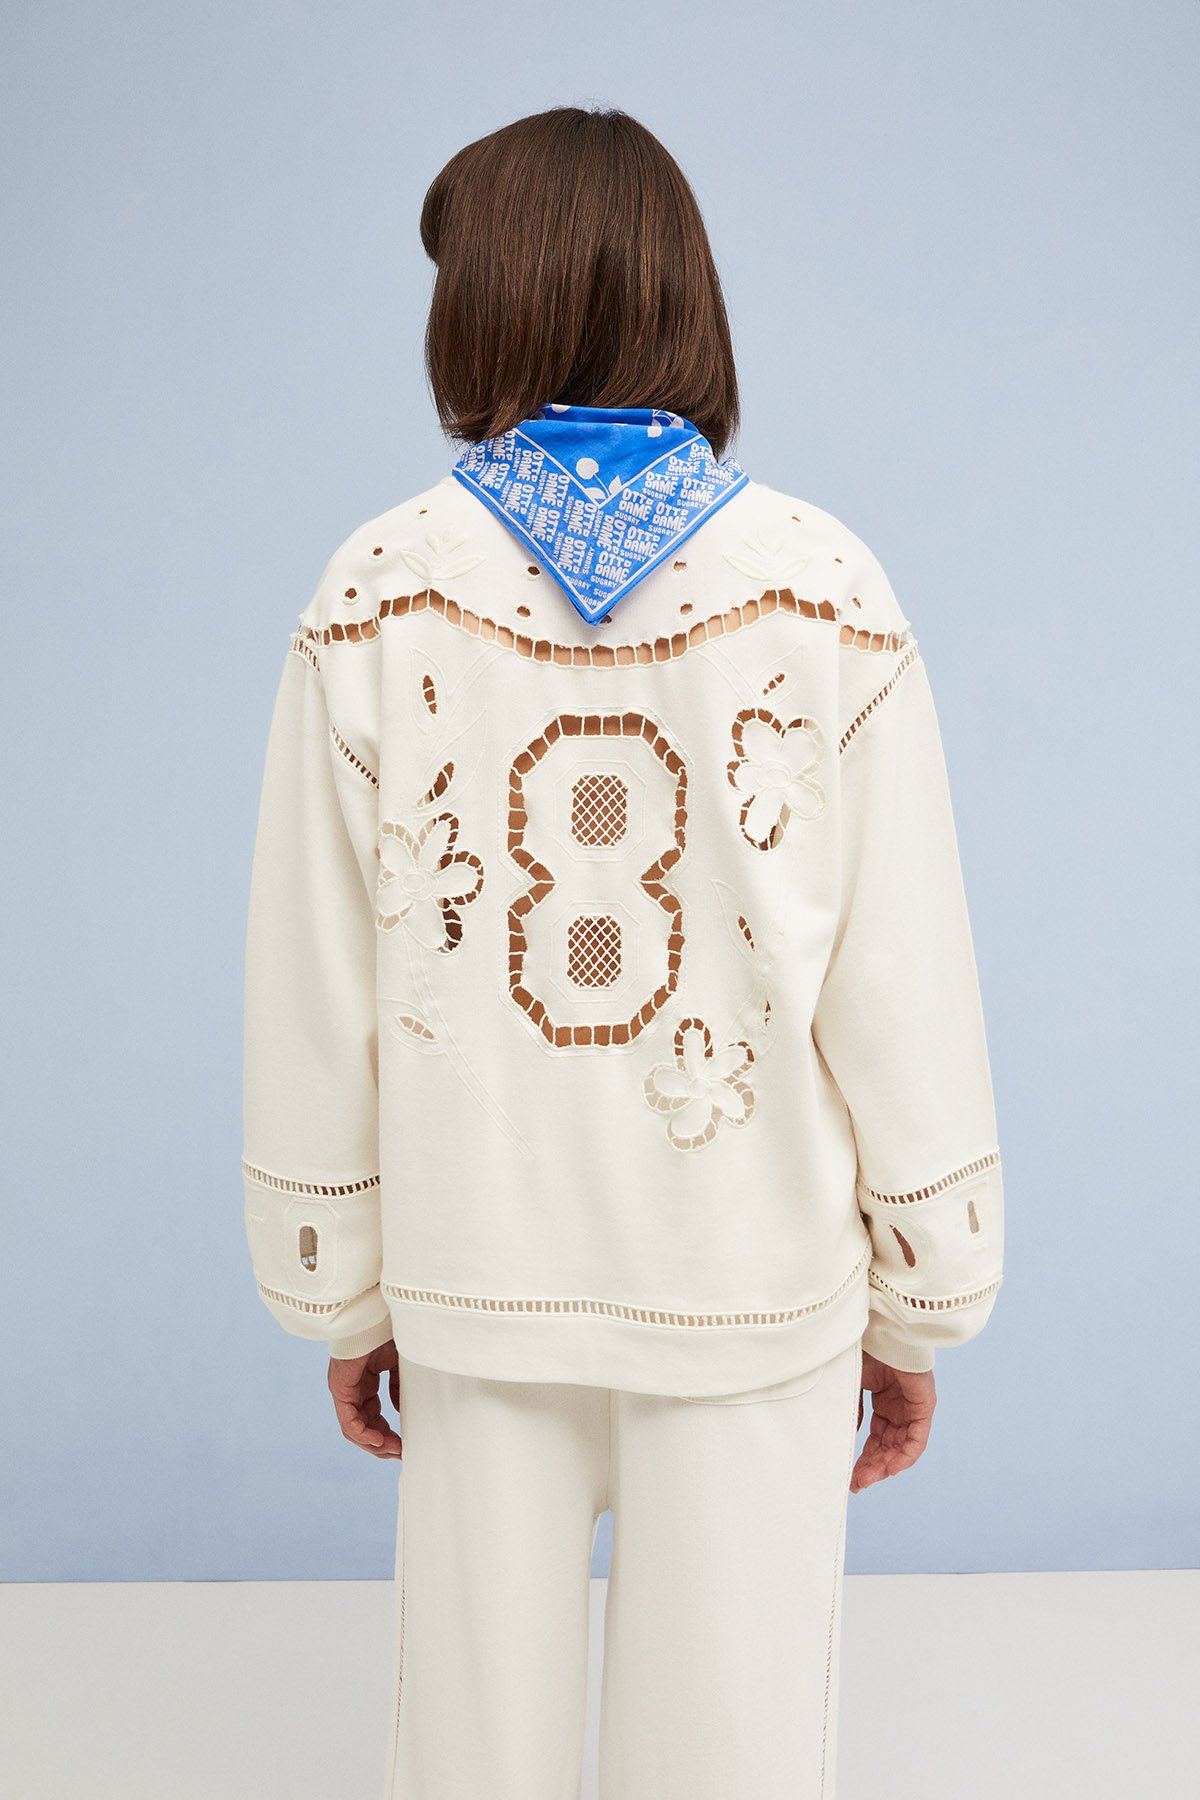 Sweatshirt with embroidery